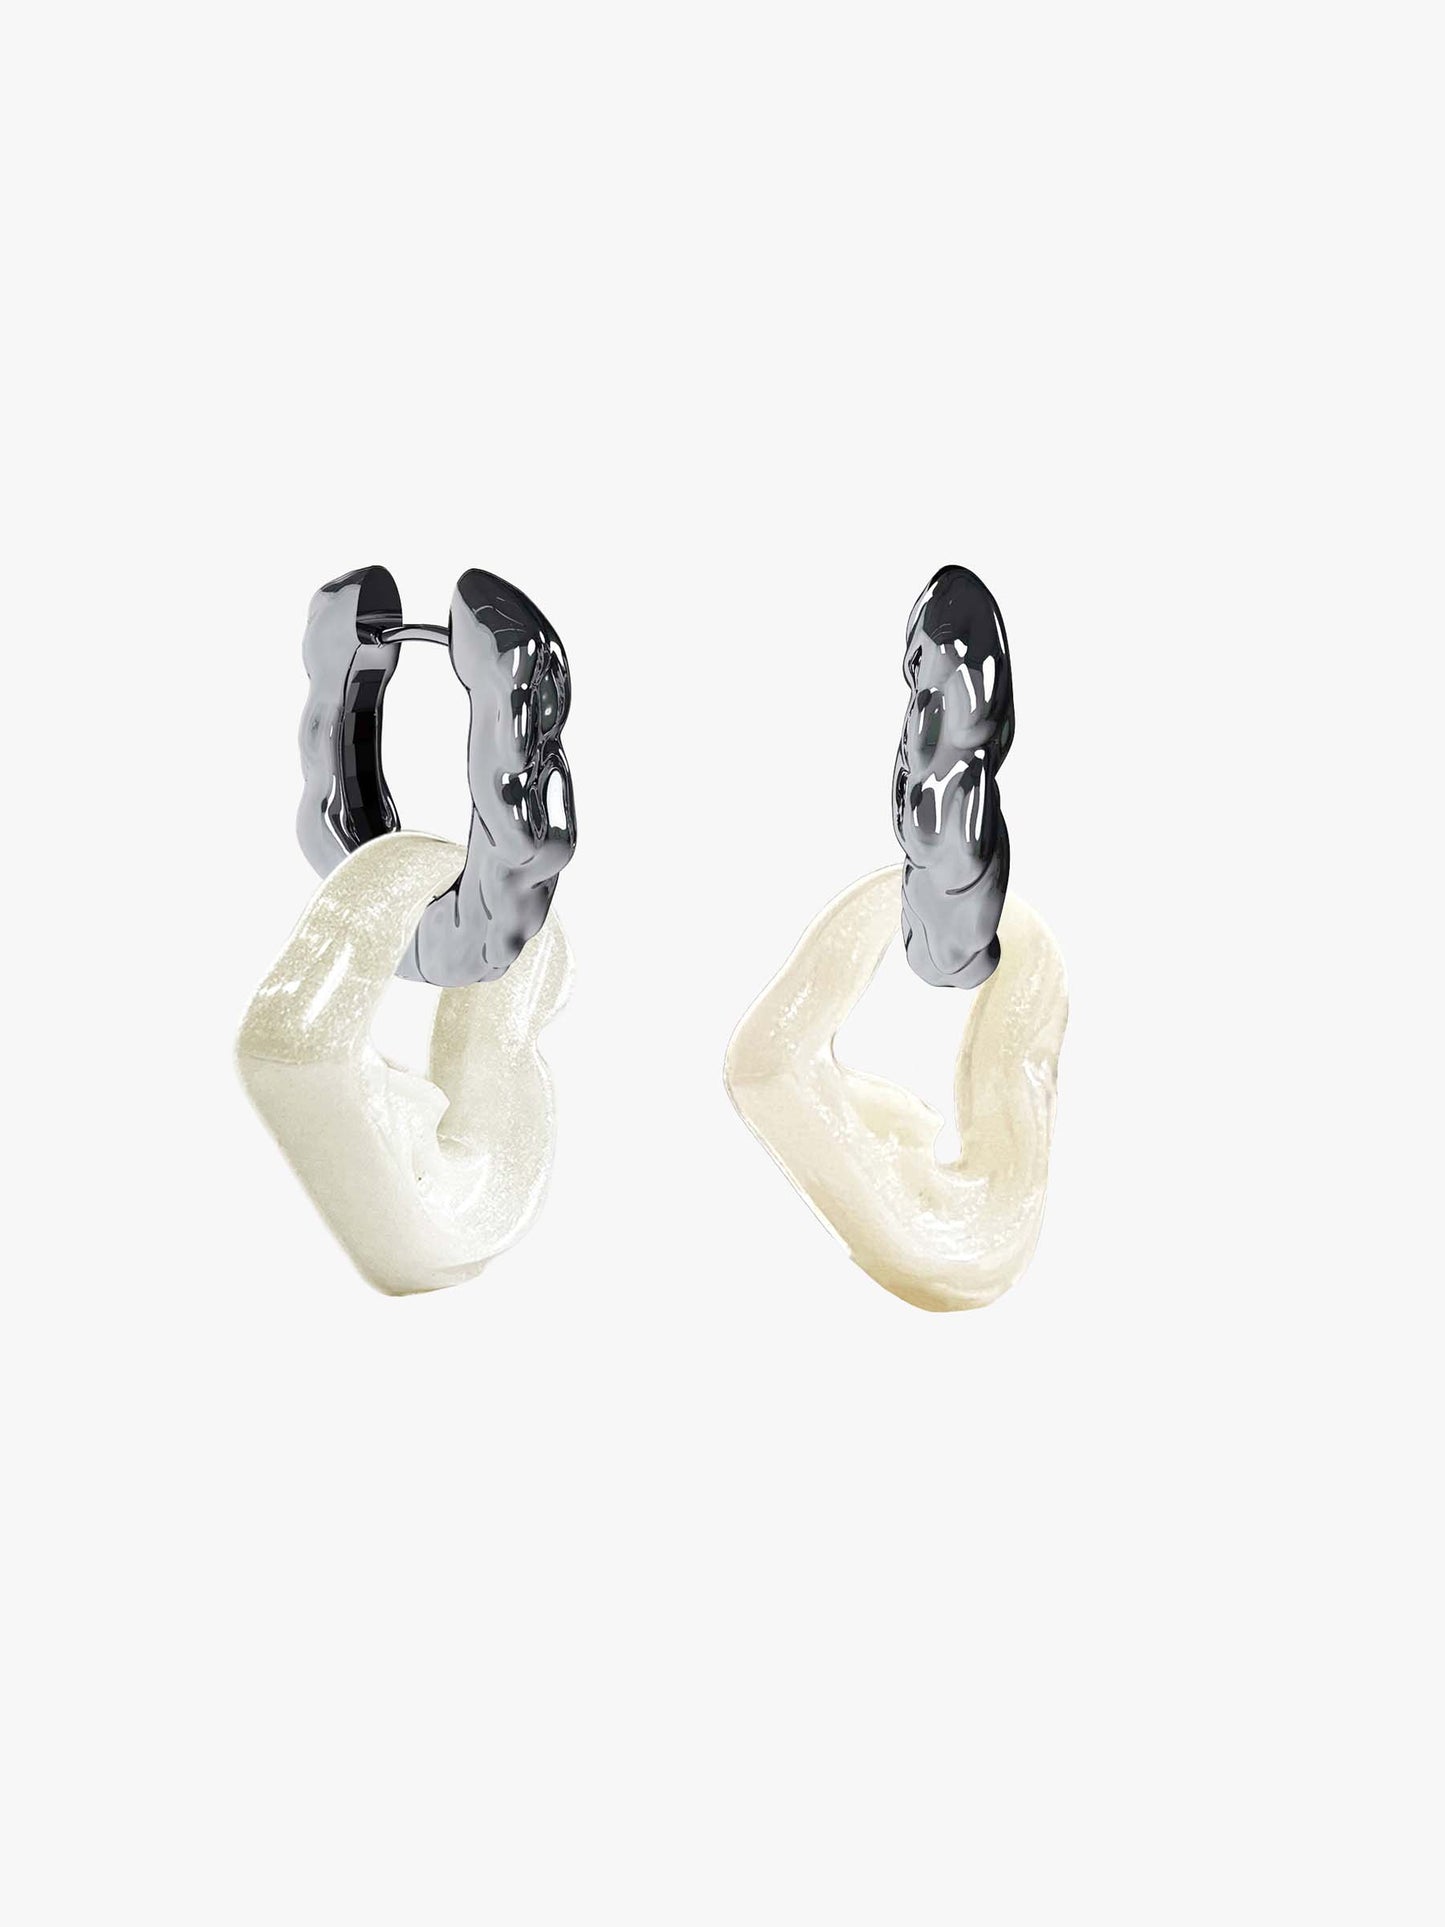 Bia Nus pearl silver earring (pair)